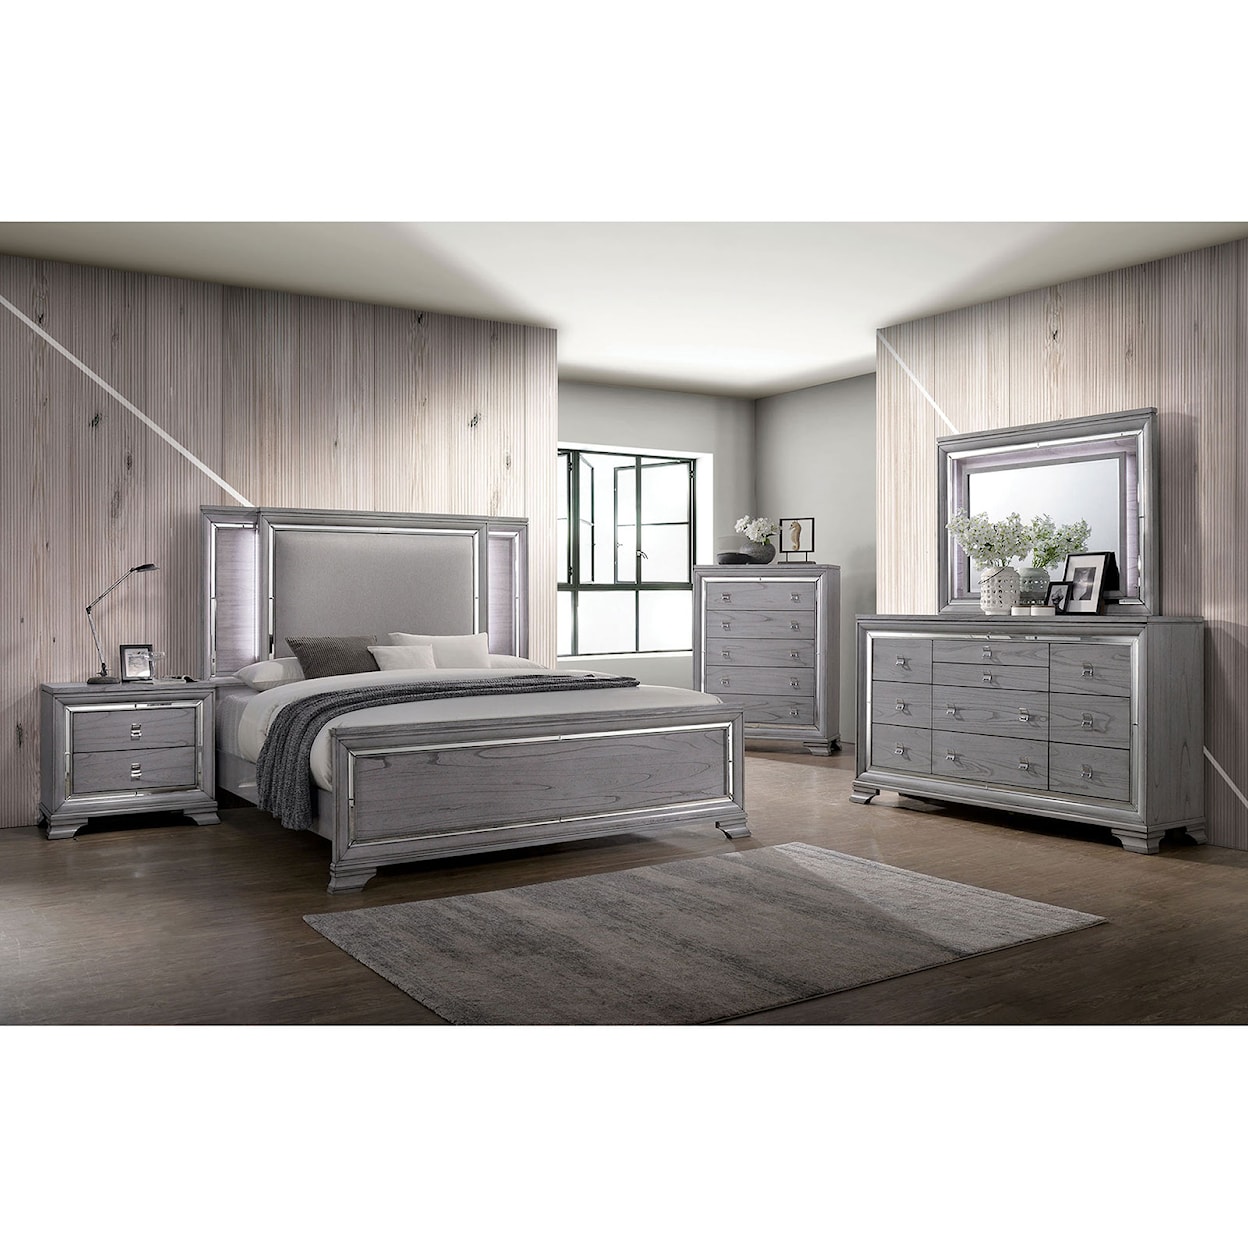 Furniture of America Alanis Queen Bedroom Set